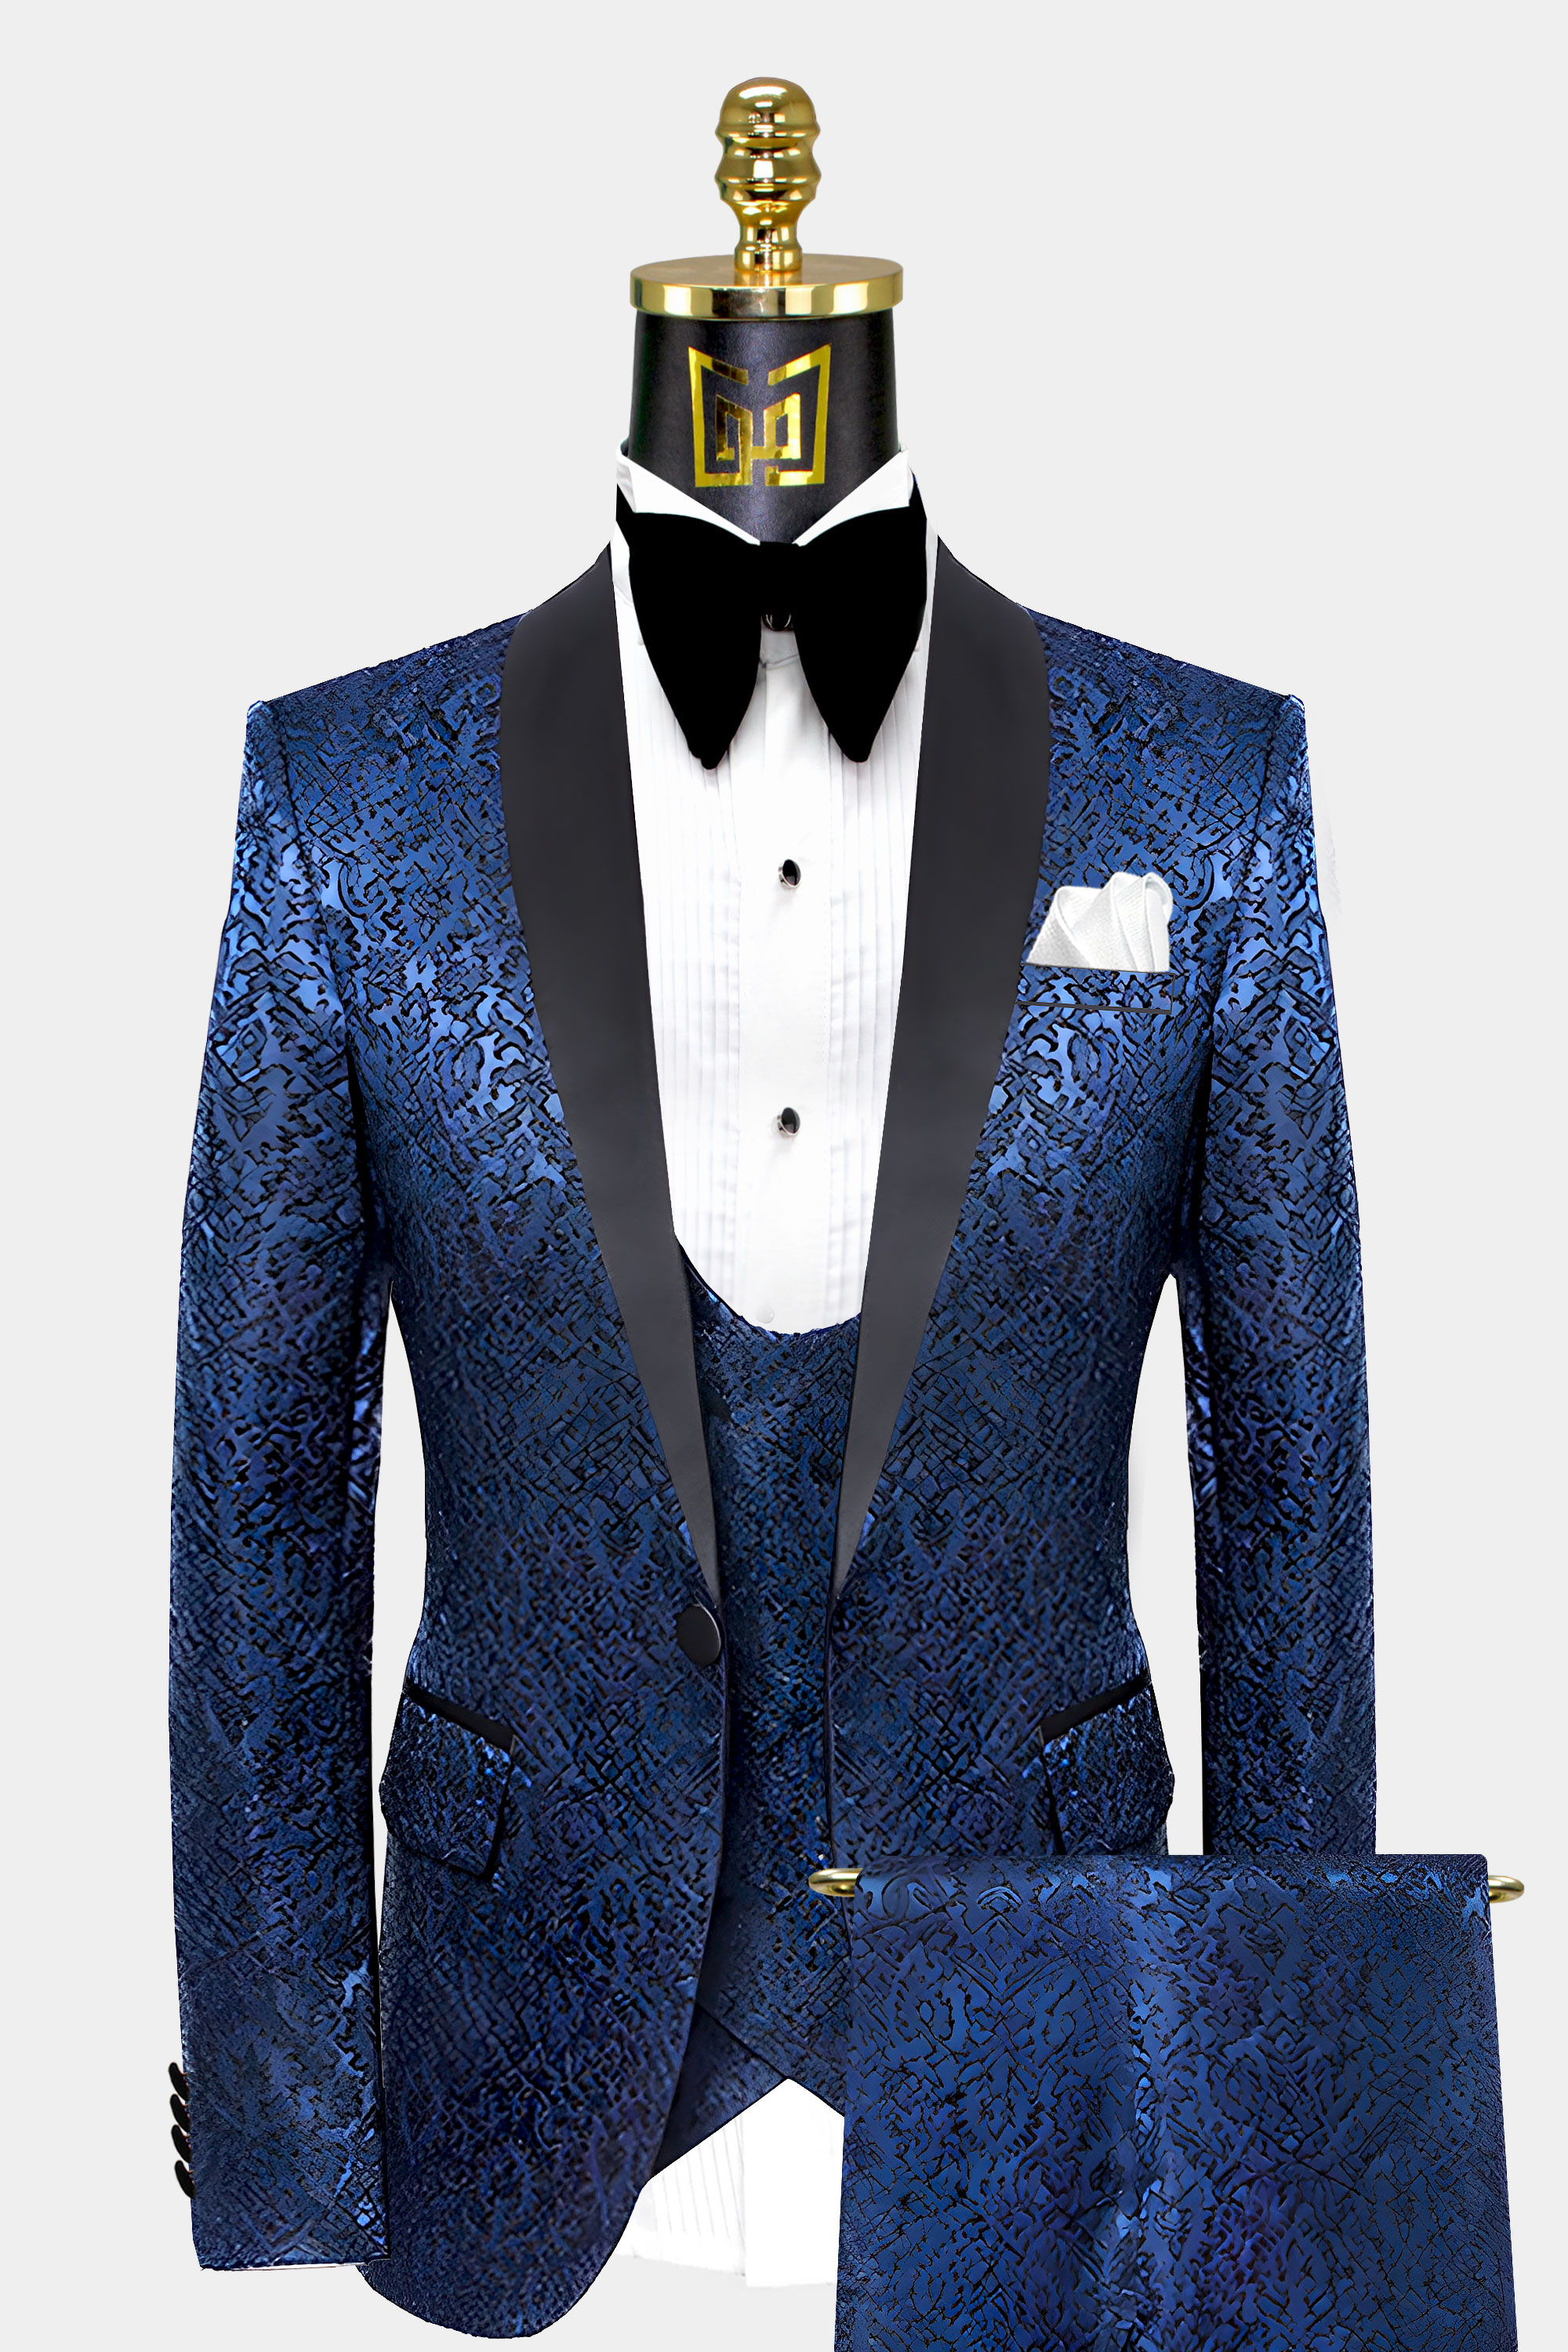 Mens-Navy-Blue-Tuxedo-with-Black-Lapel-Groom-Prom-Wedding-Suit-from-Gentlemansguru.com